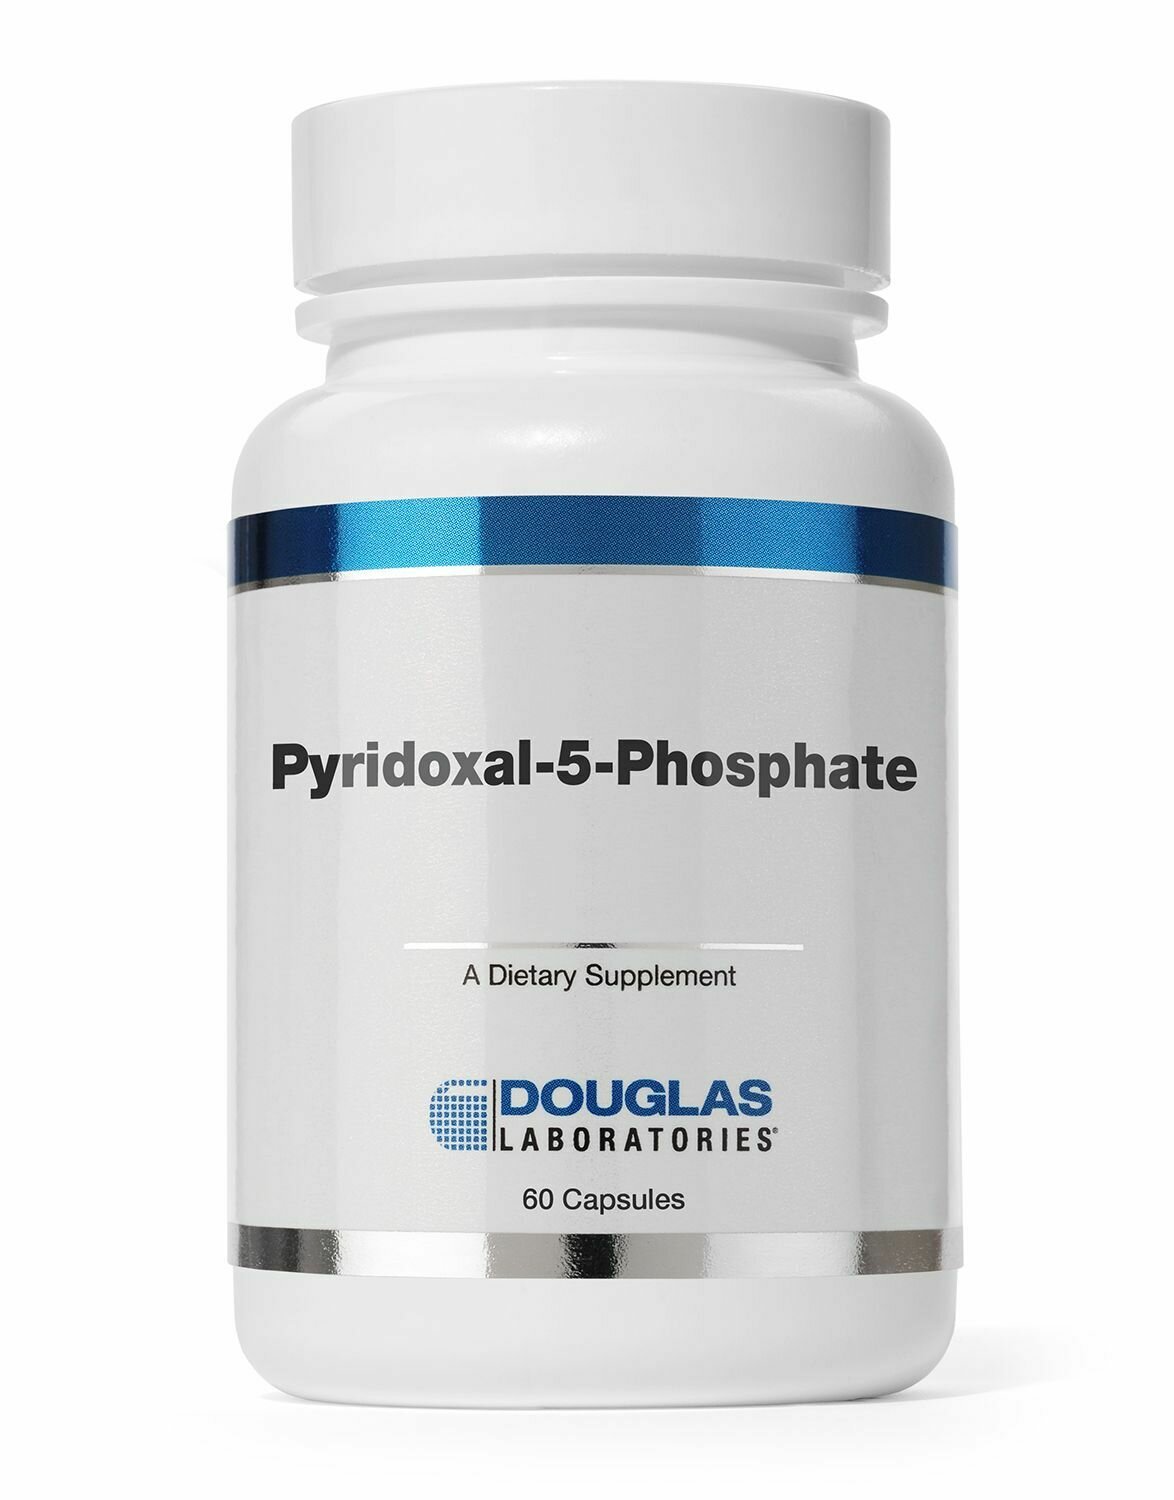 Pyridoxal-5-Phosphate (50 mg. capsules)